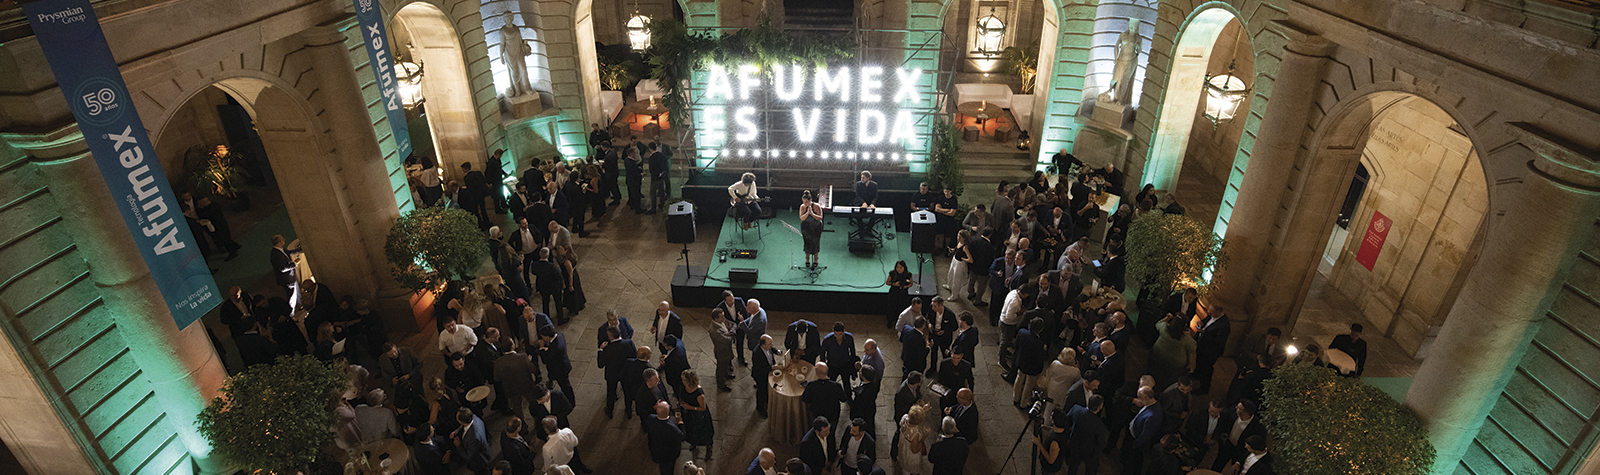 Prysmian Group celebra con un evento el 50 aniversario de la Tecnología Afumex®